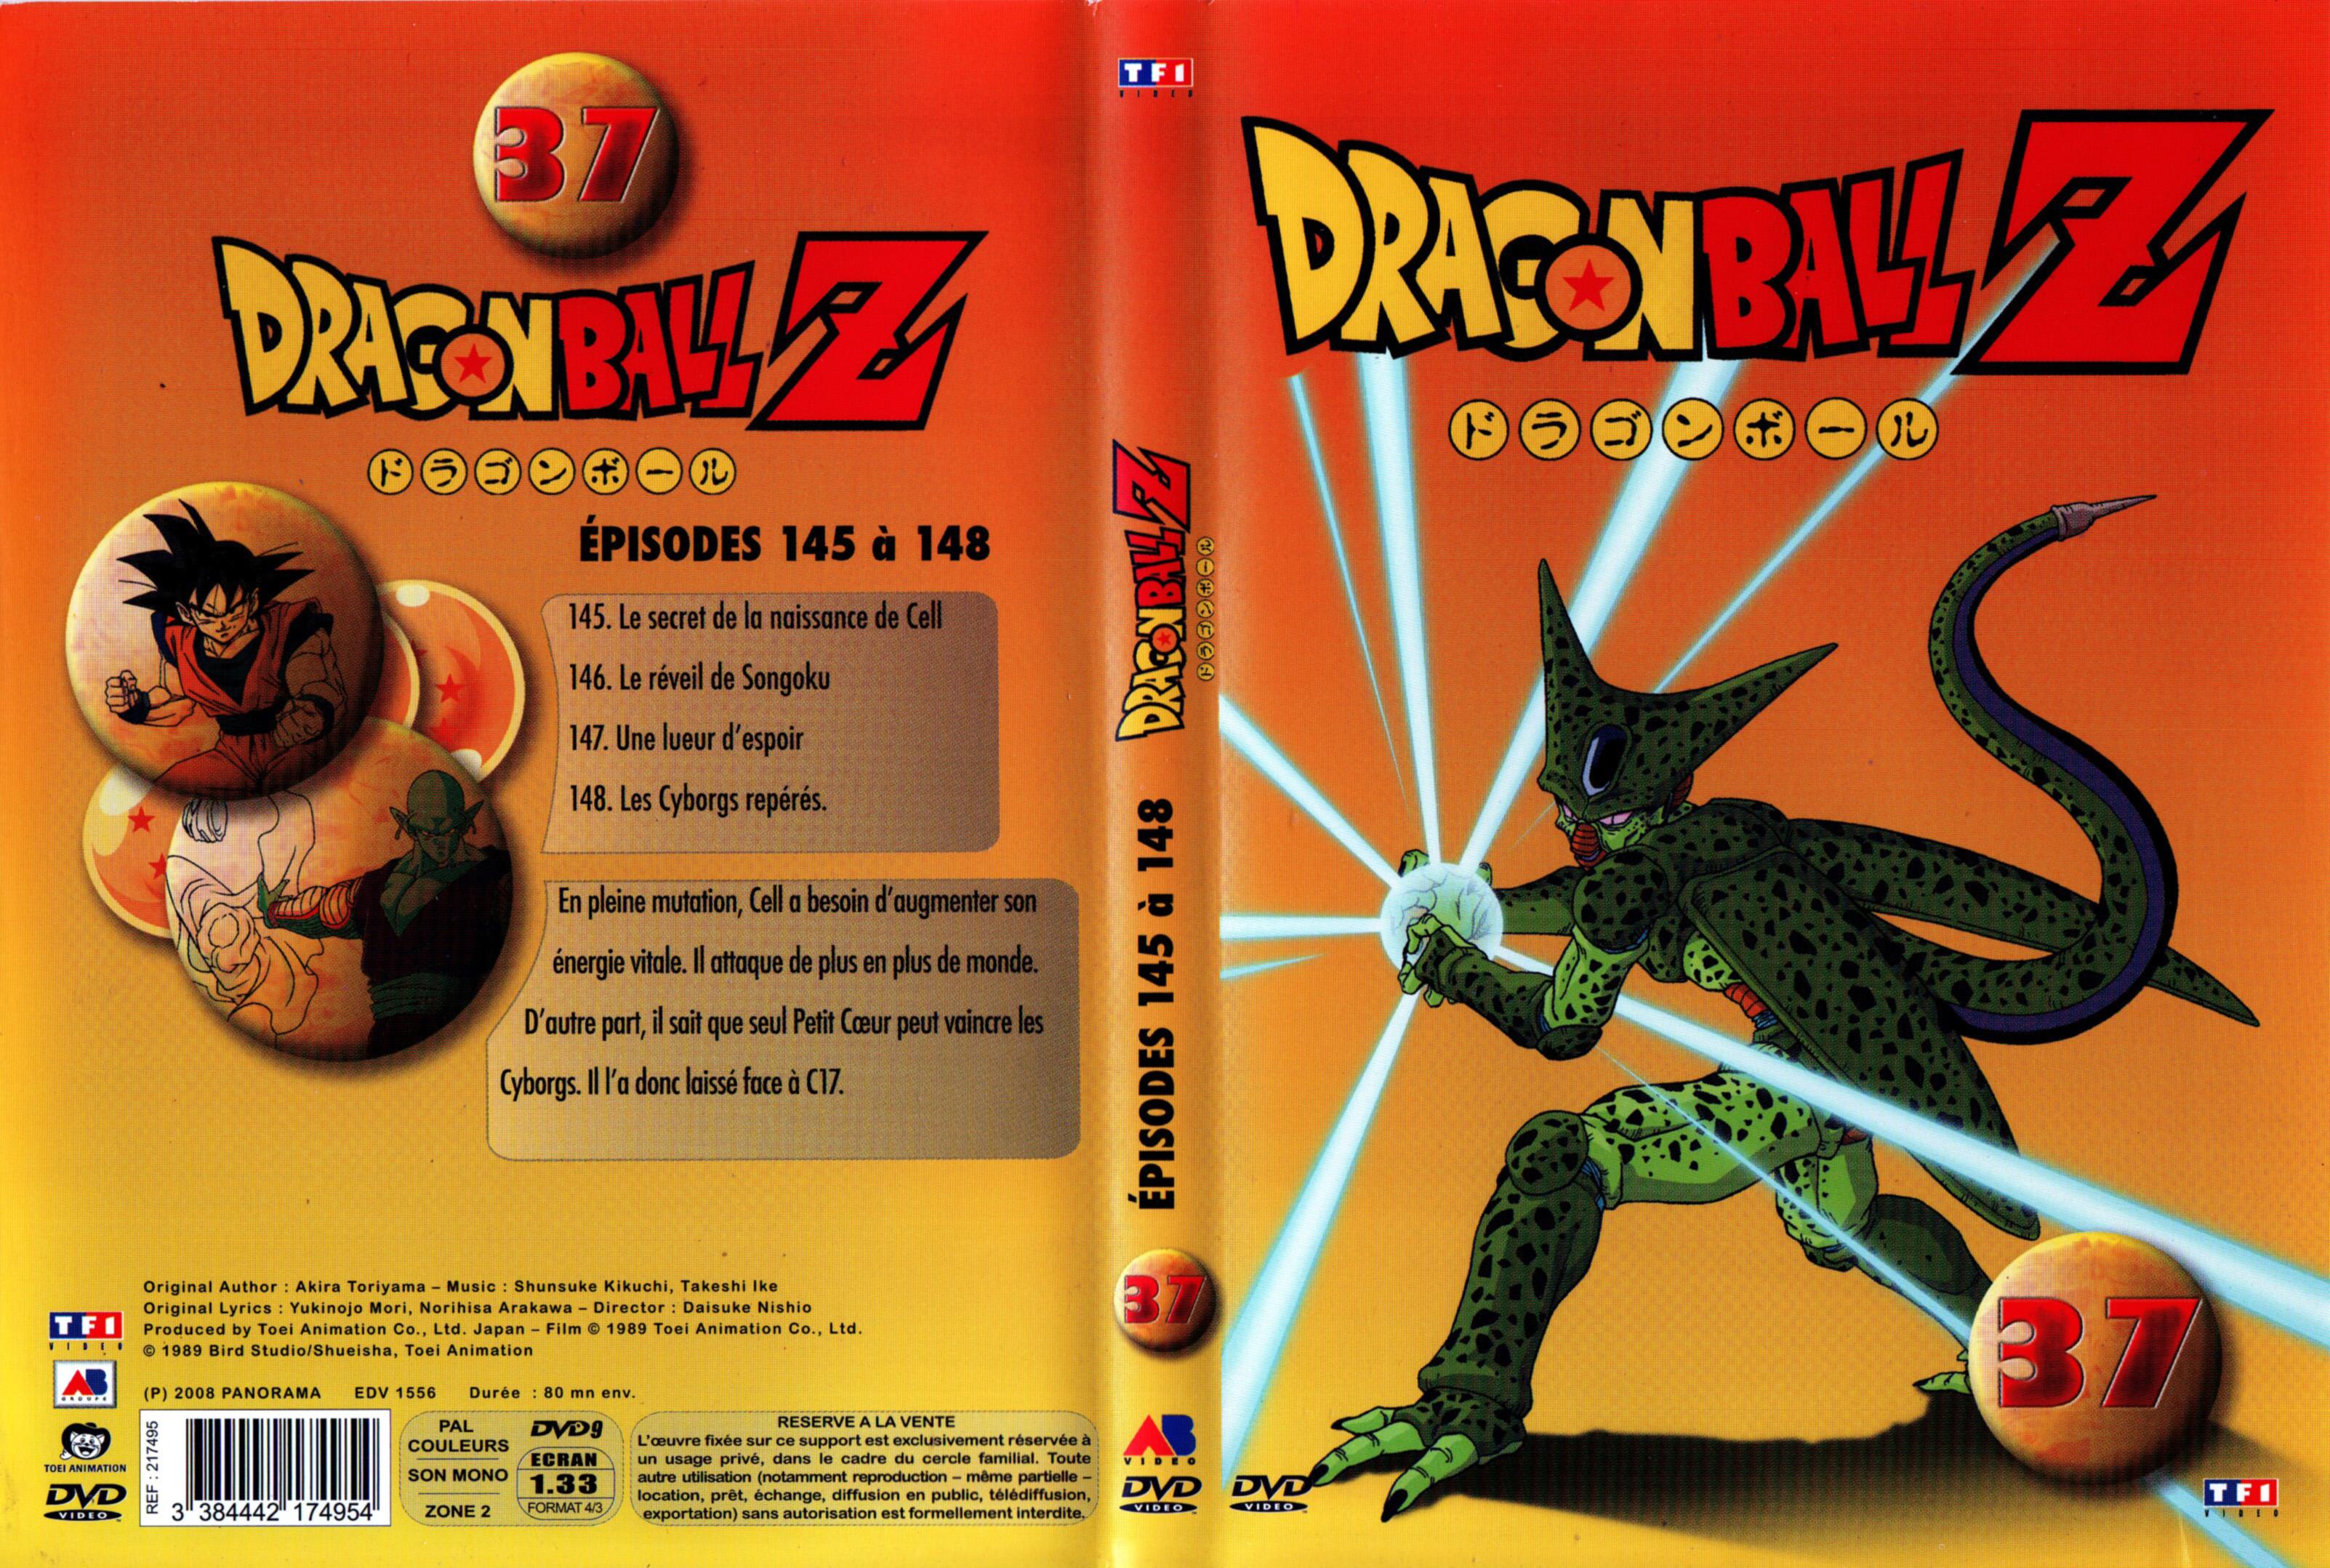 Jaquette DVD Dragon Ball Z vol 37 v2